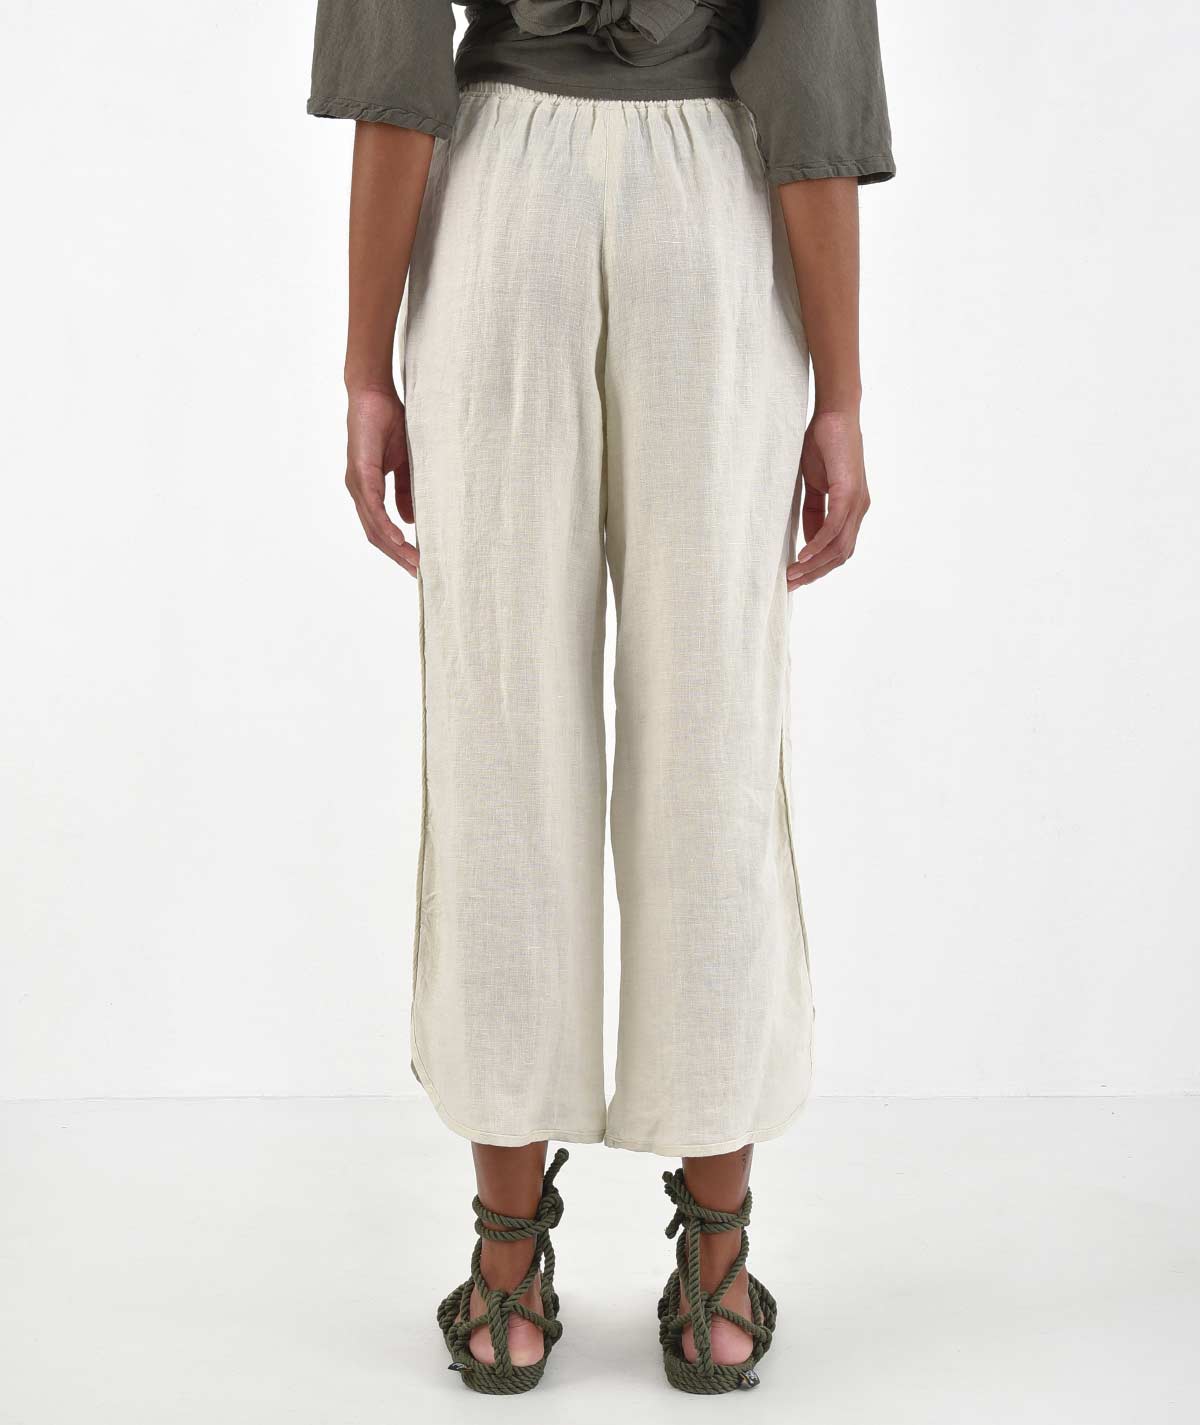 Quince Women's Driftwood European Linen Pants sz M Relaxed Elastic Waist PO